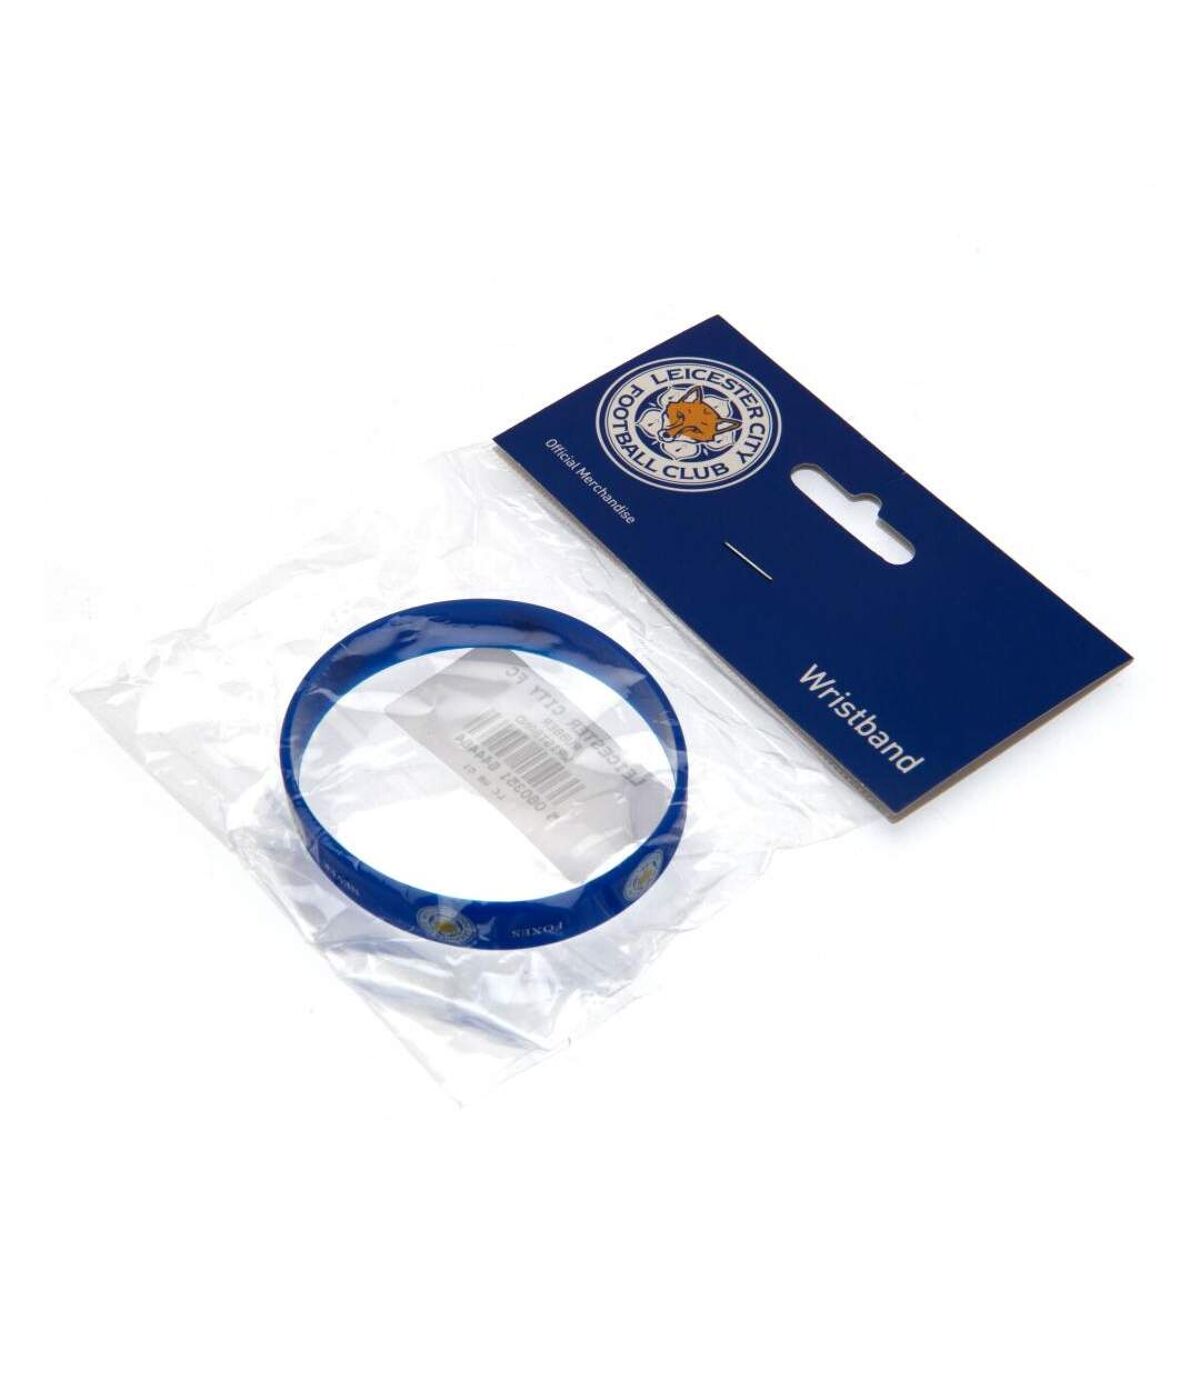 Leicester City FC Bracelet en silicone officiel des Foxes Never Quit (Bleu) (Taille unique) - UTTA1365